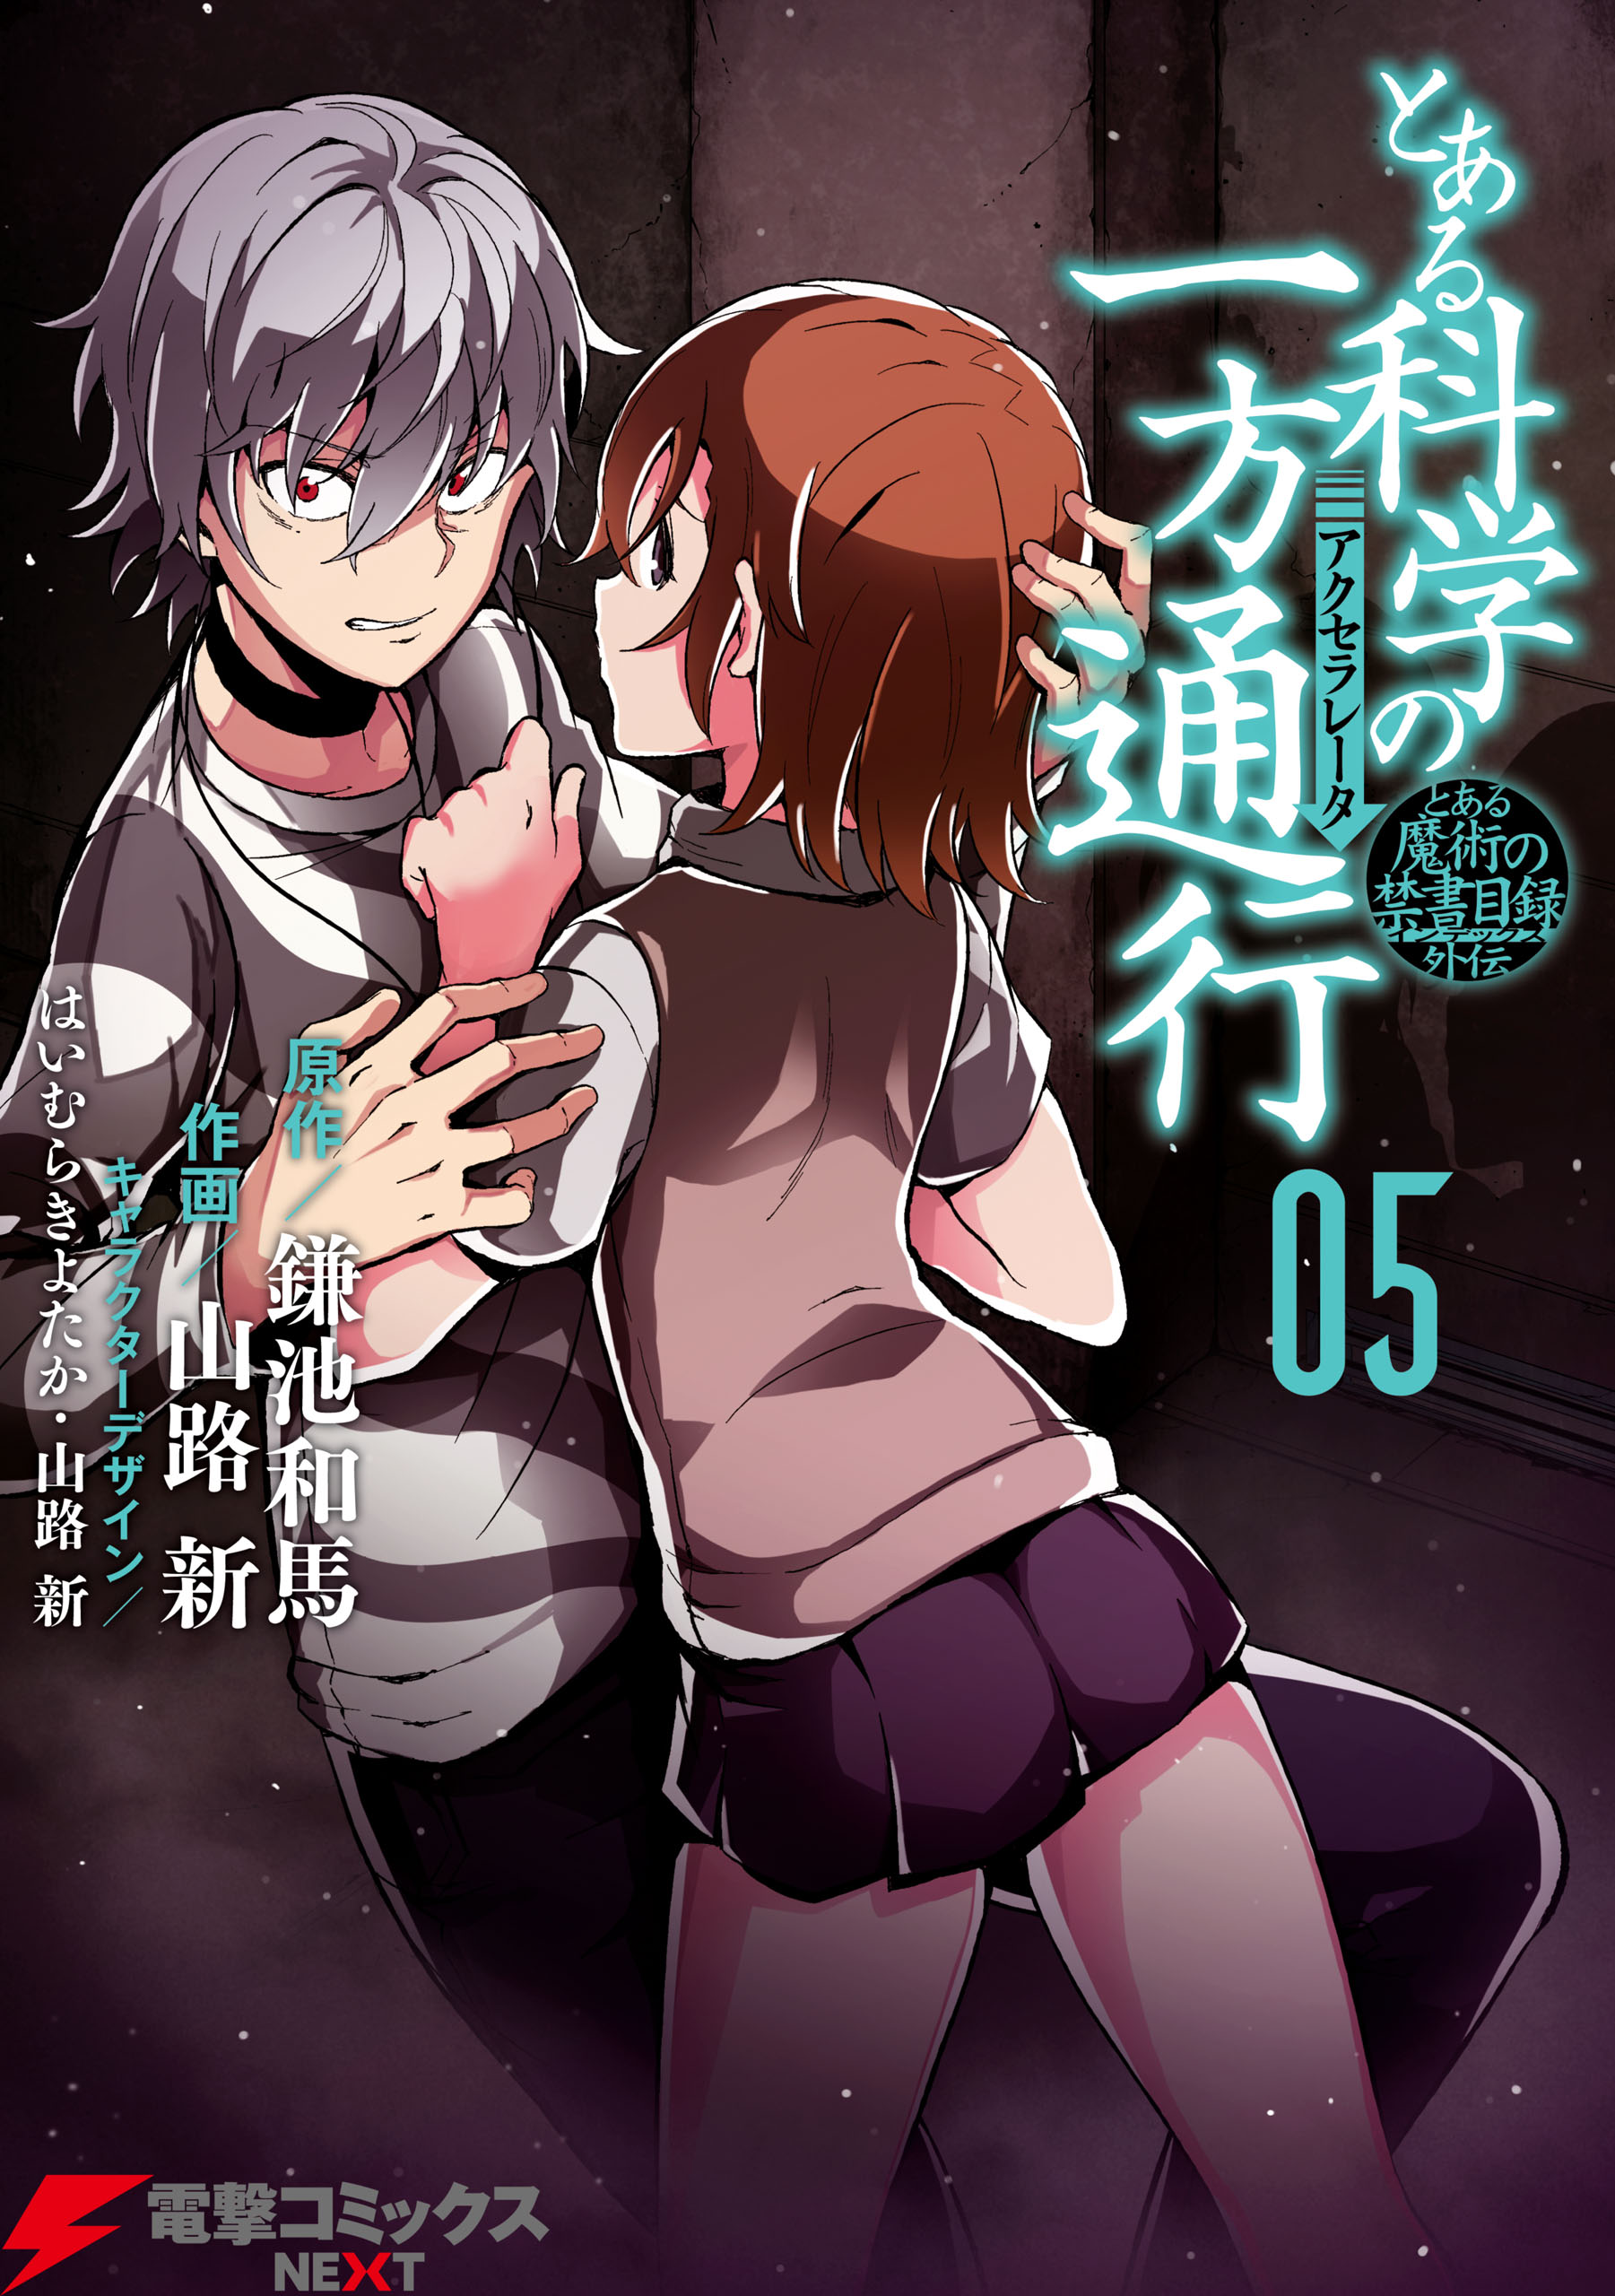 Toaru Kagaku no Accelerator (manga), Toaru Majutsu no Index Wiki